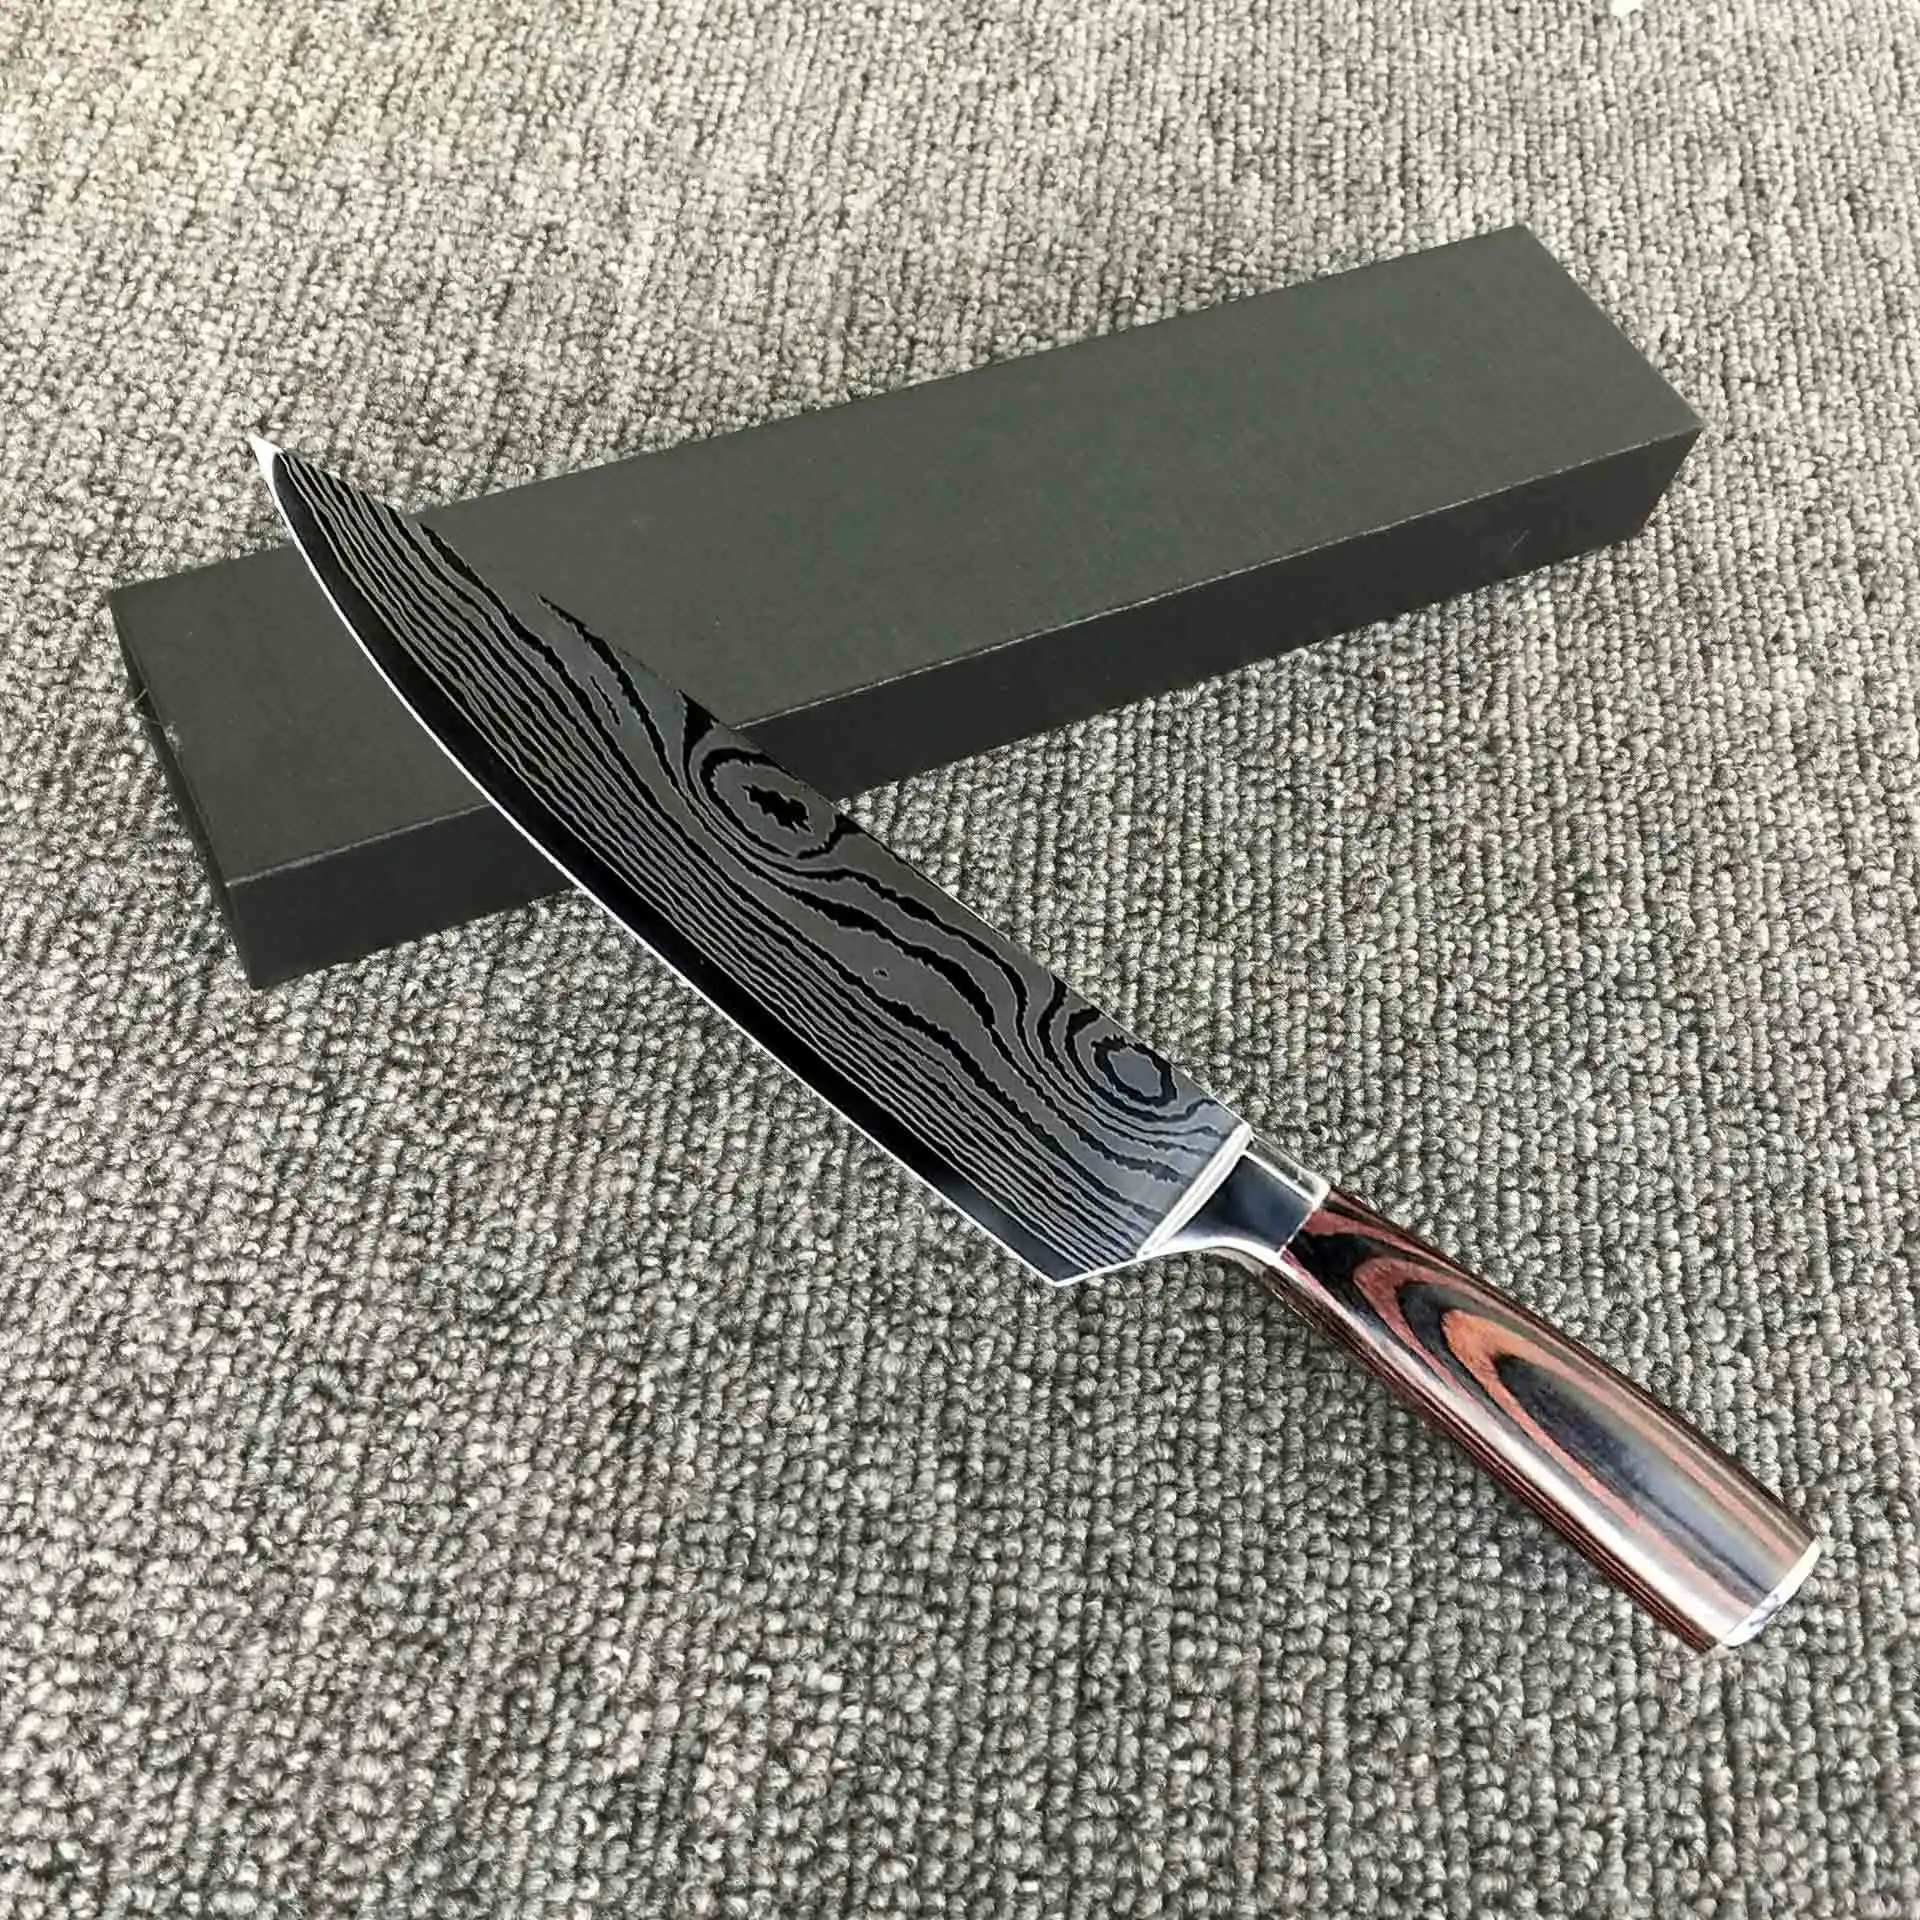 Дамасский узор шеф-повара нож нарезанный нож для мяса кухонная деревянная ручка ножа шлифовальный нож универсальный нож - Цвет: A 3